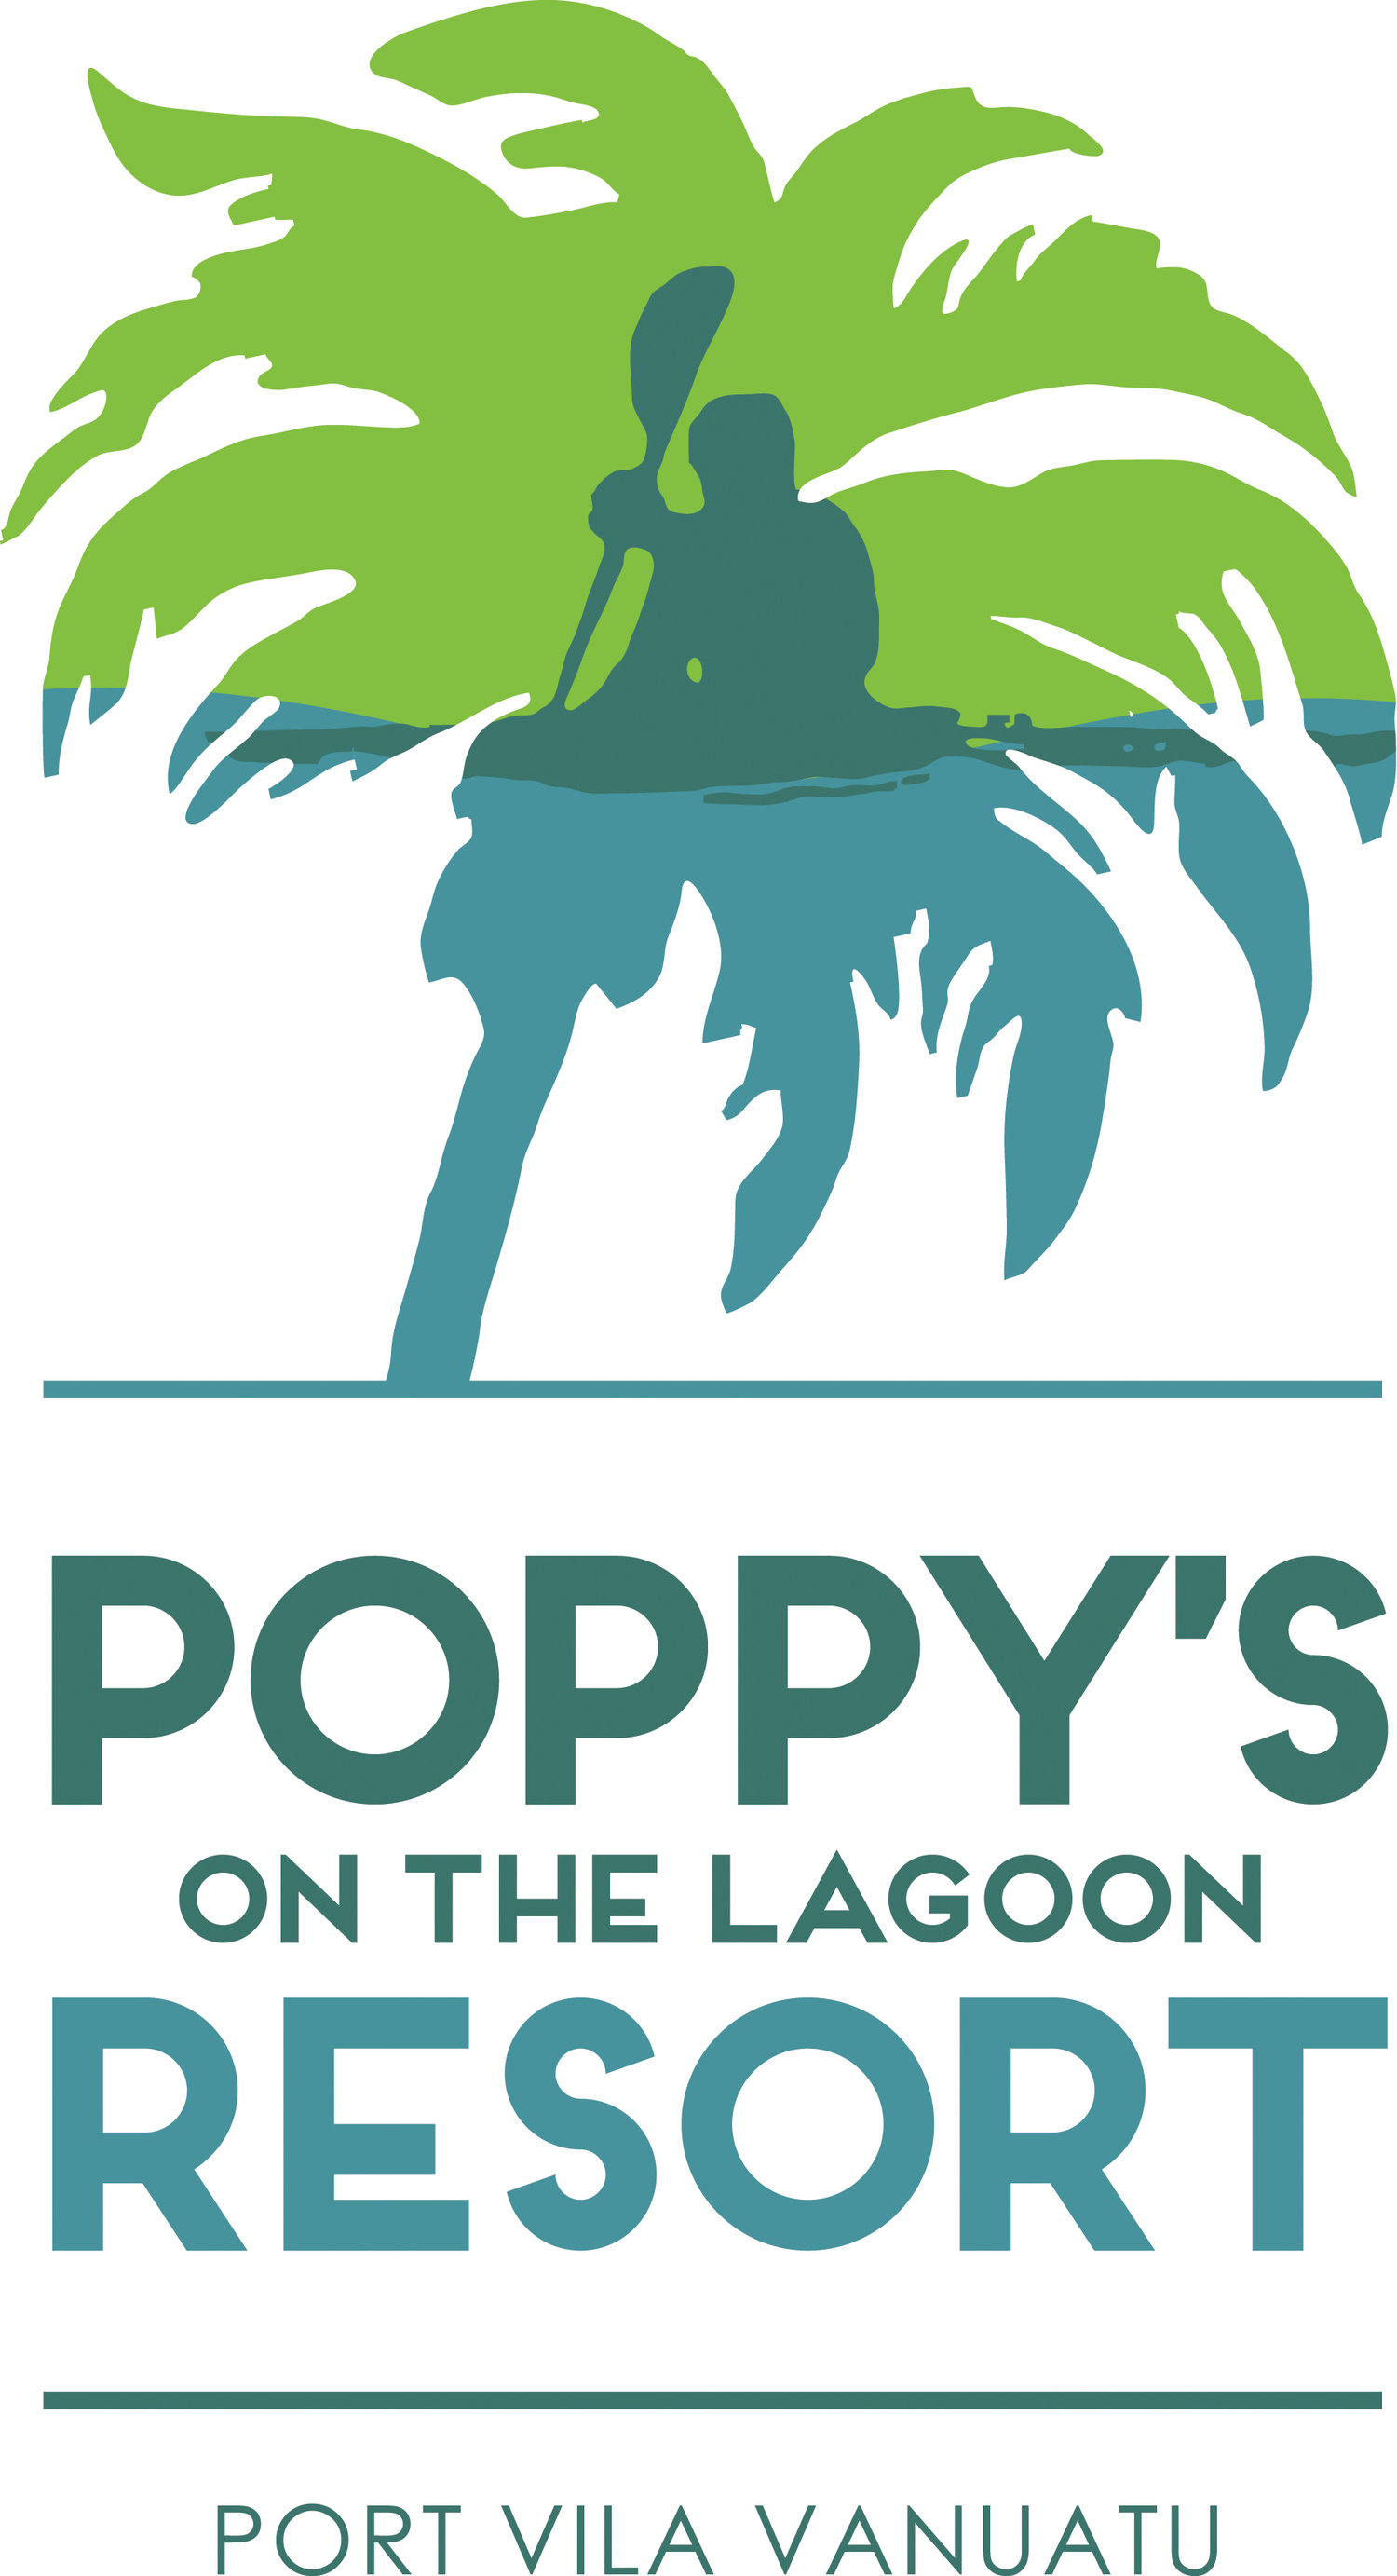 Poppys on the Lagoon